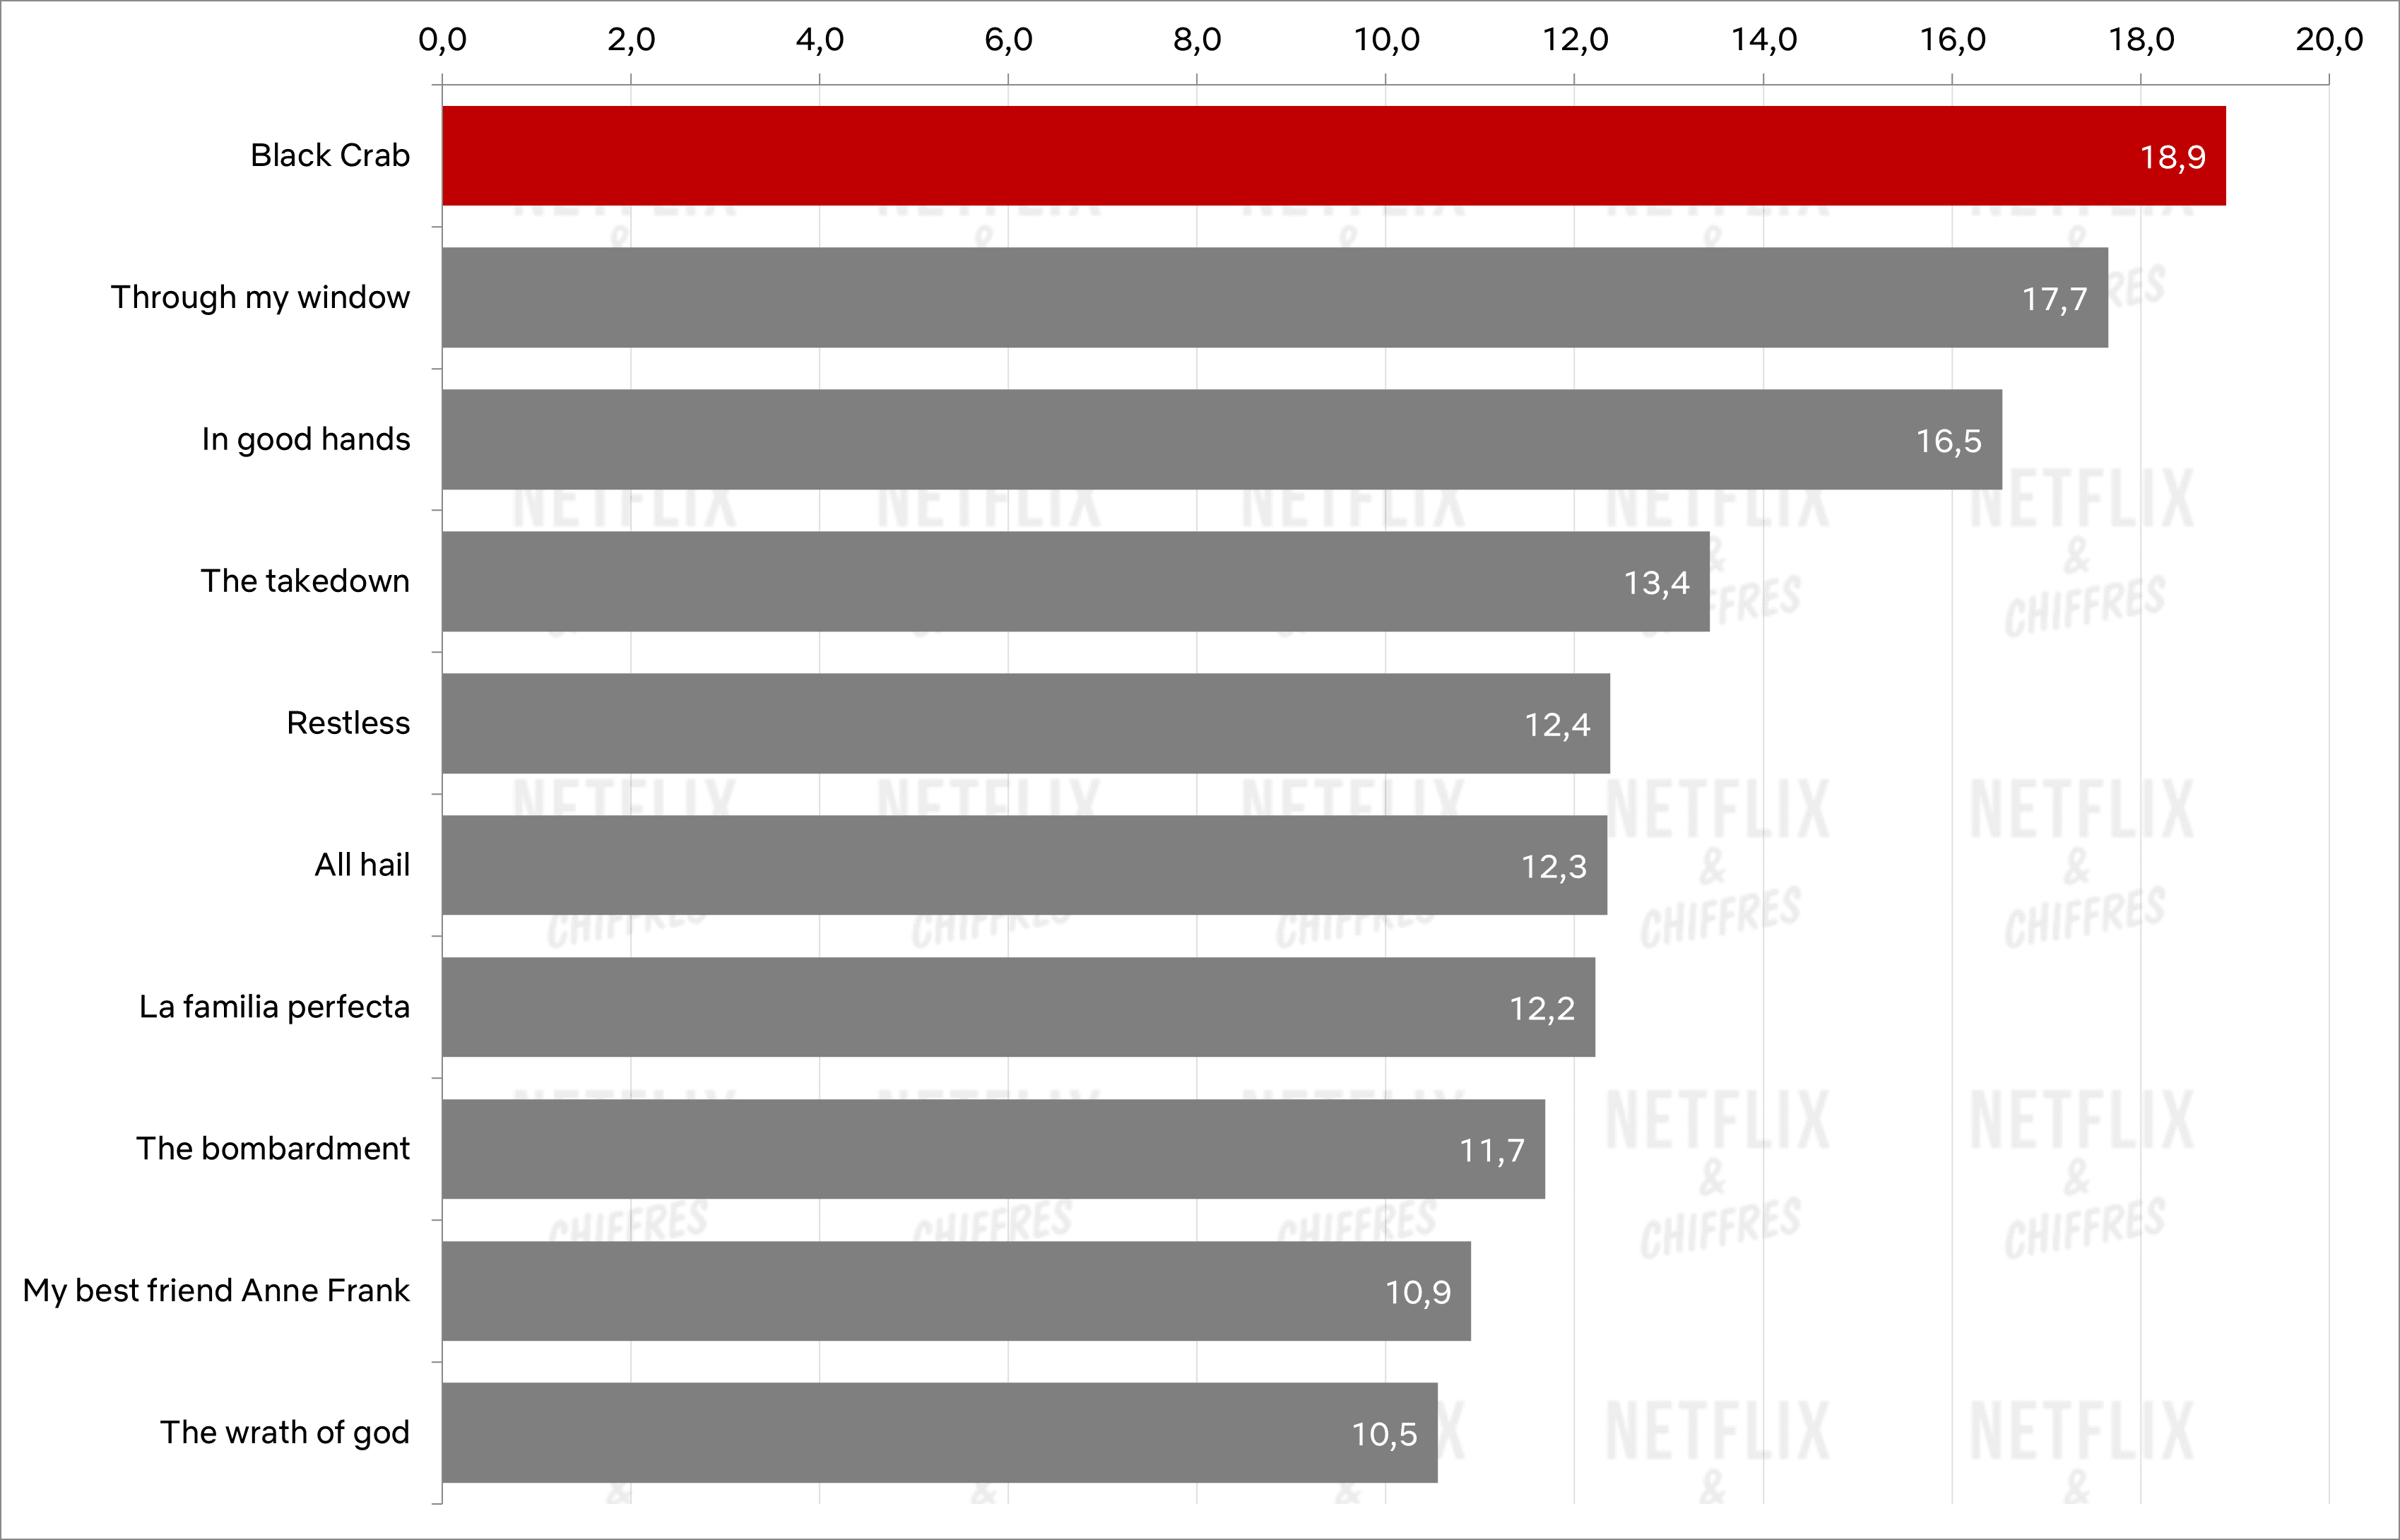 El cangrejo negro encabeza la tabla de películas originales no inglesas de Netflix.